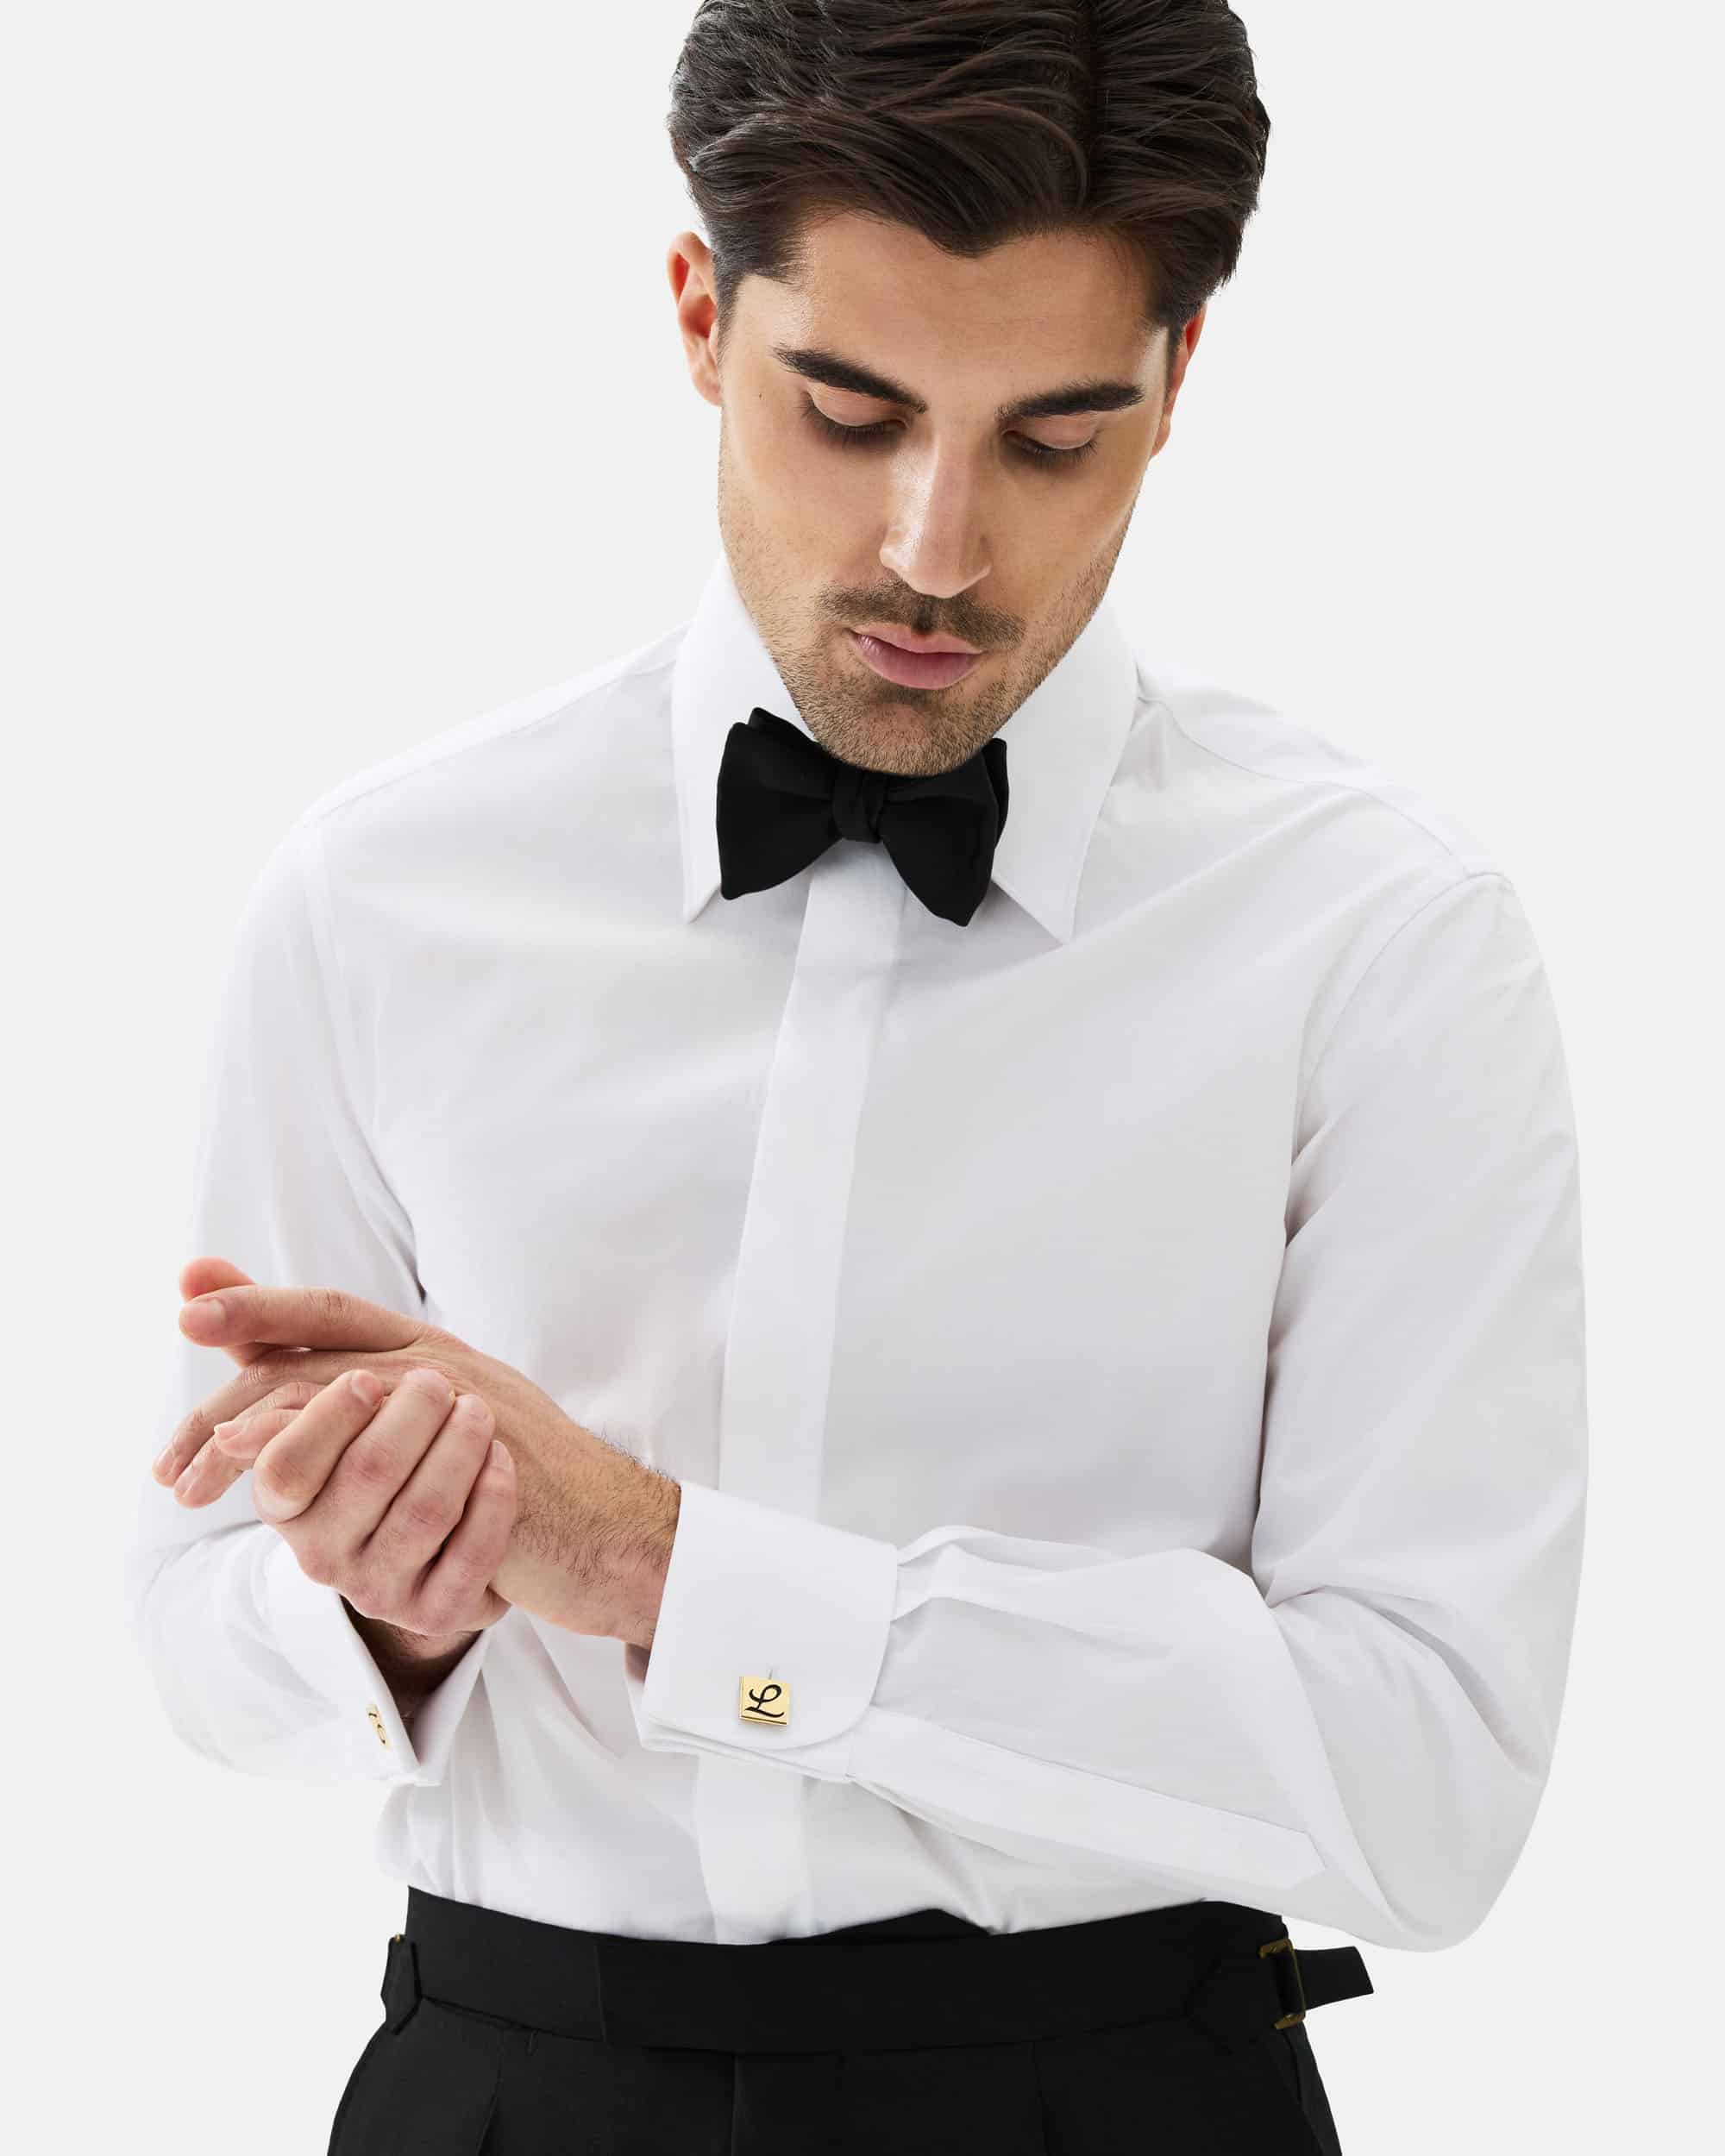 Tuxedo shirt with studs white image 2